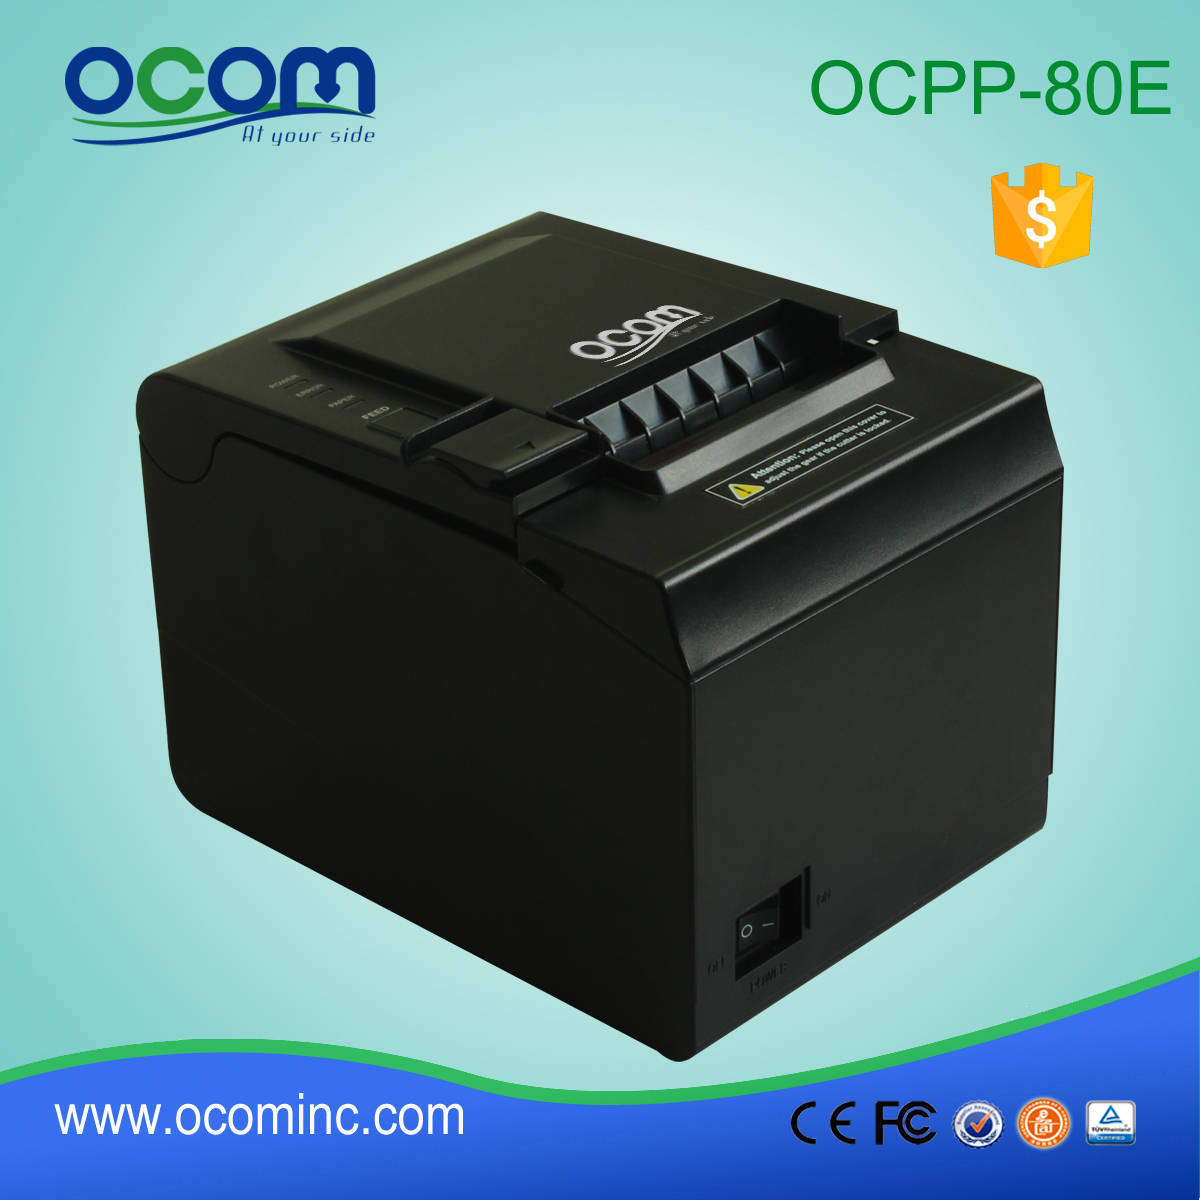 OCPP-80E 中国厂家usb串口网口Pos热敏收据打印机